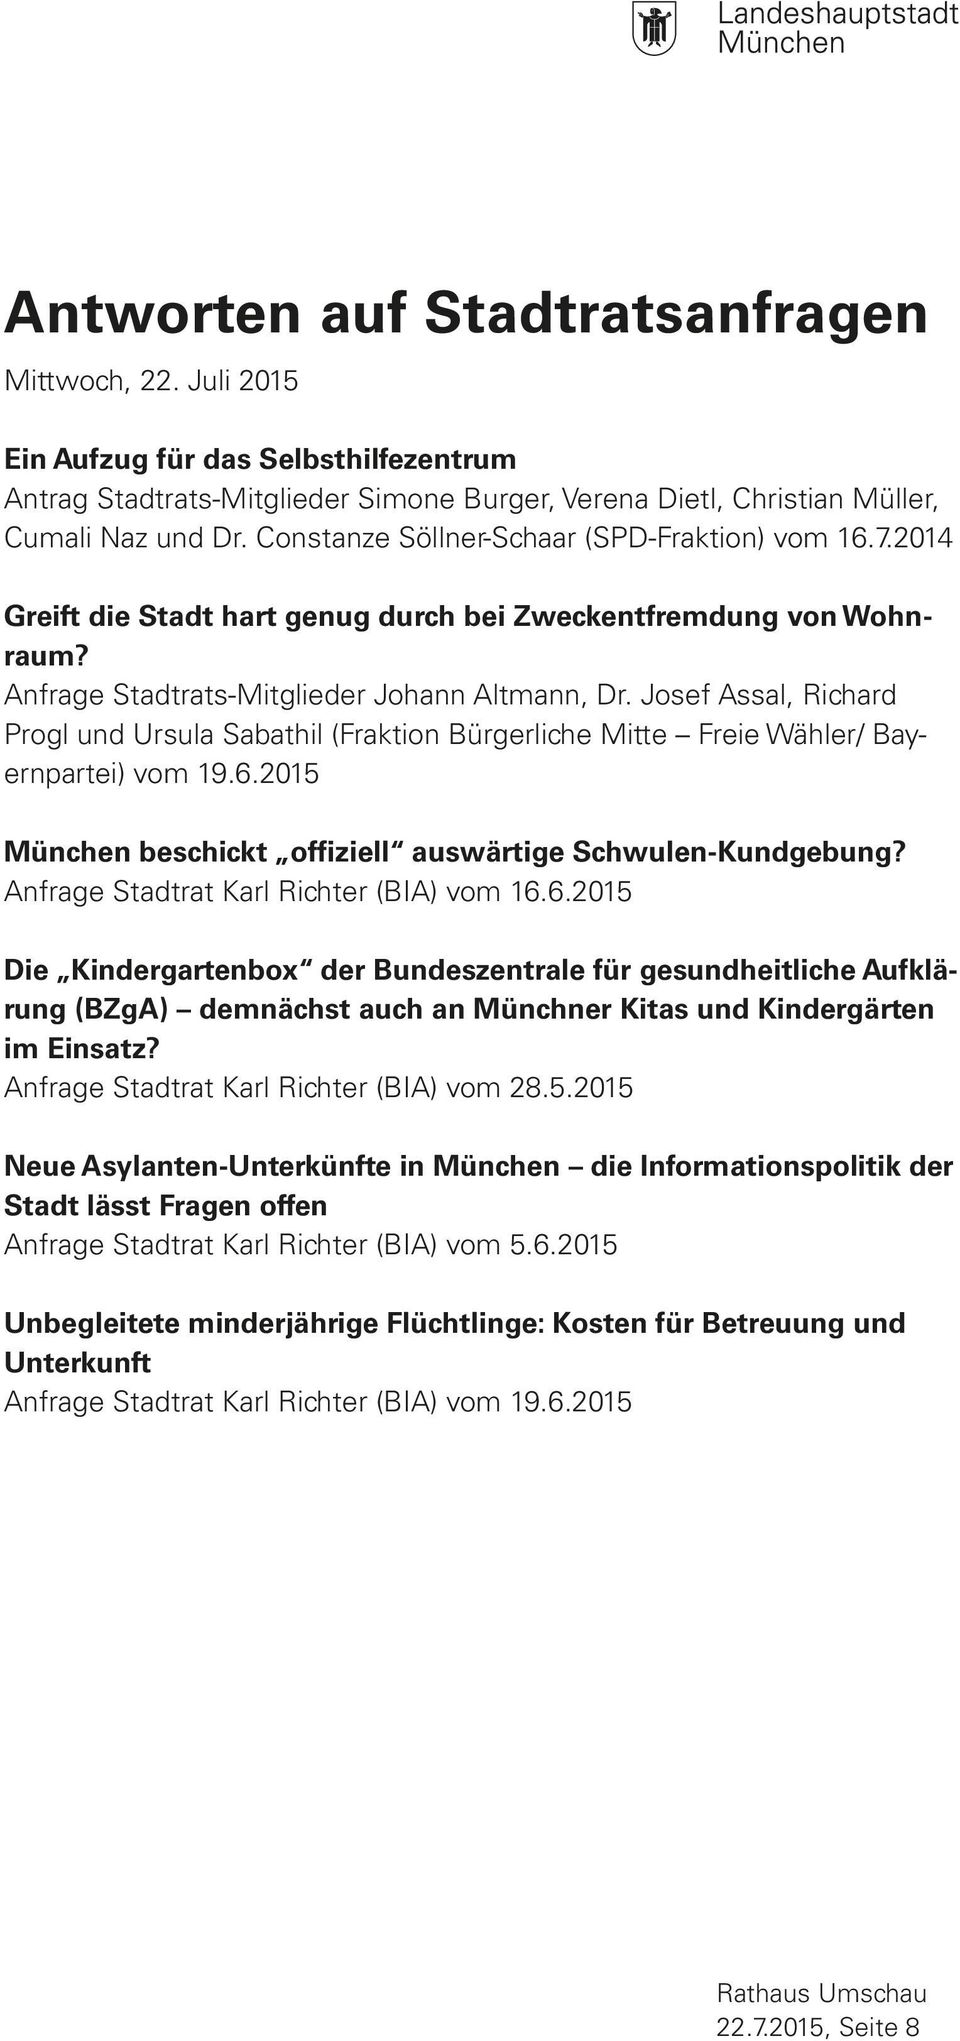 Josef Assal, Richard Progl und Ursula Sabathil (Fraktion Bürgerliche Mitte Freie Wähler/ Bayernpartei) vom 19.6.2015 München beschickt offiziell auswärtige Schwulen-Kundgebung?